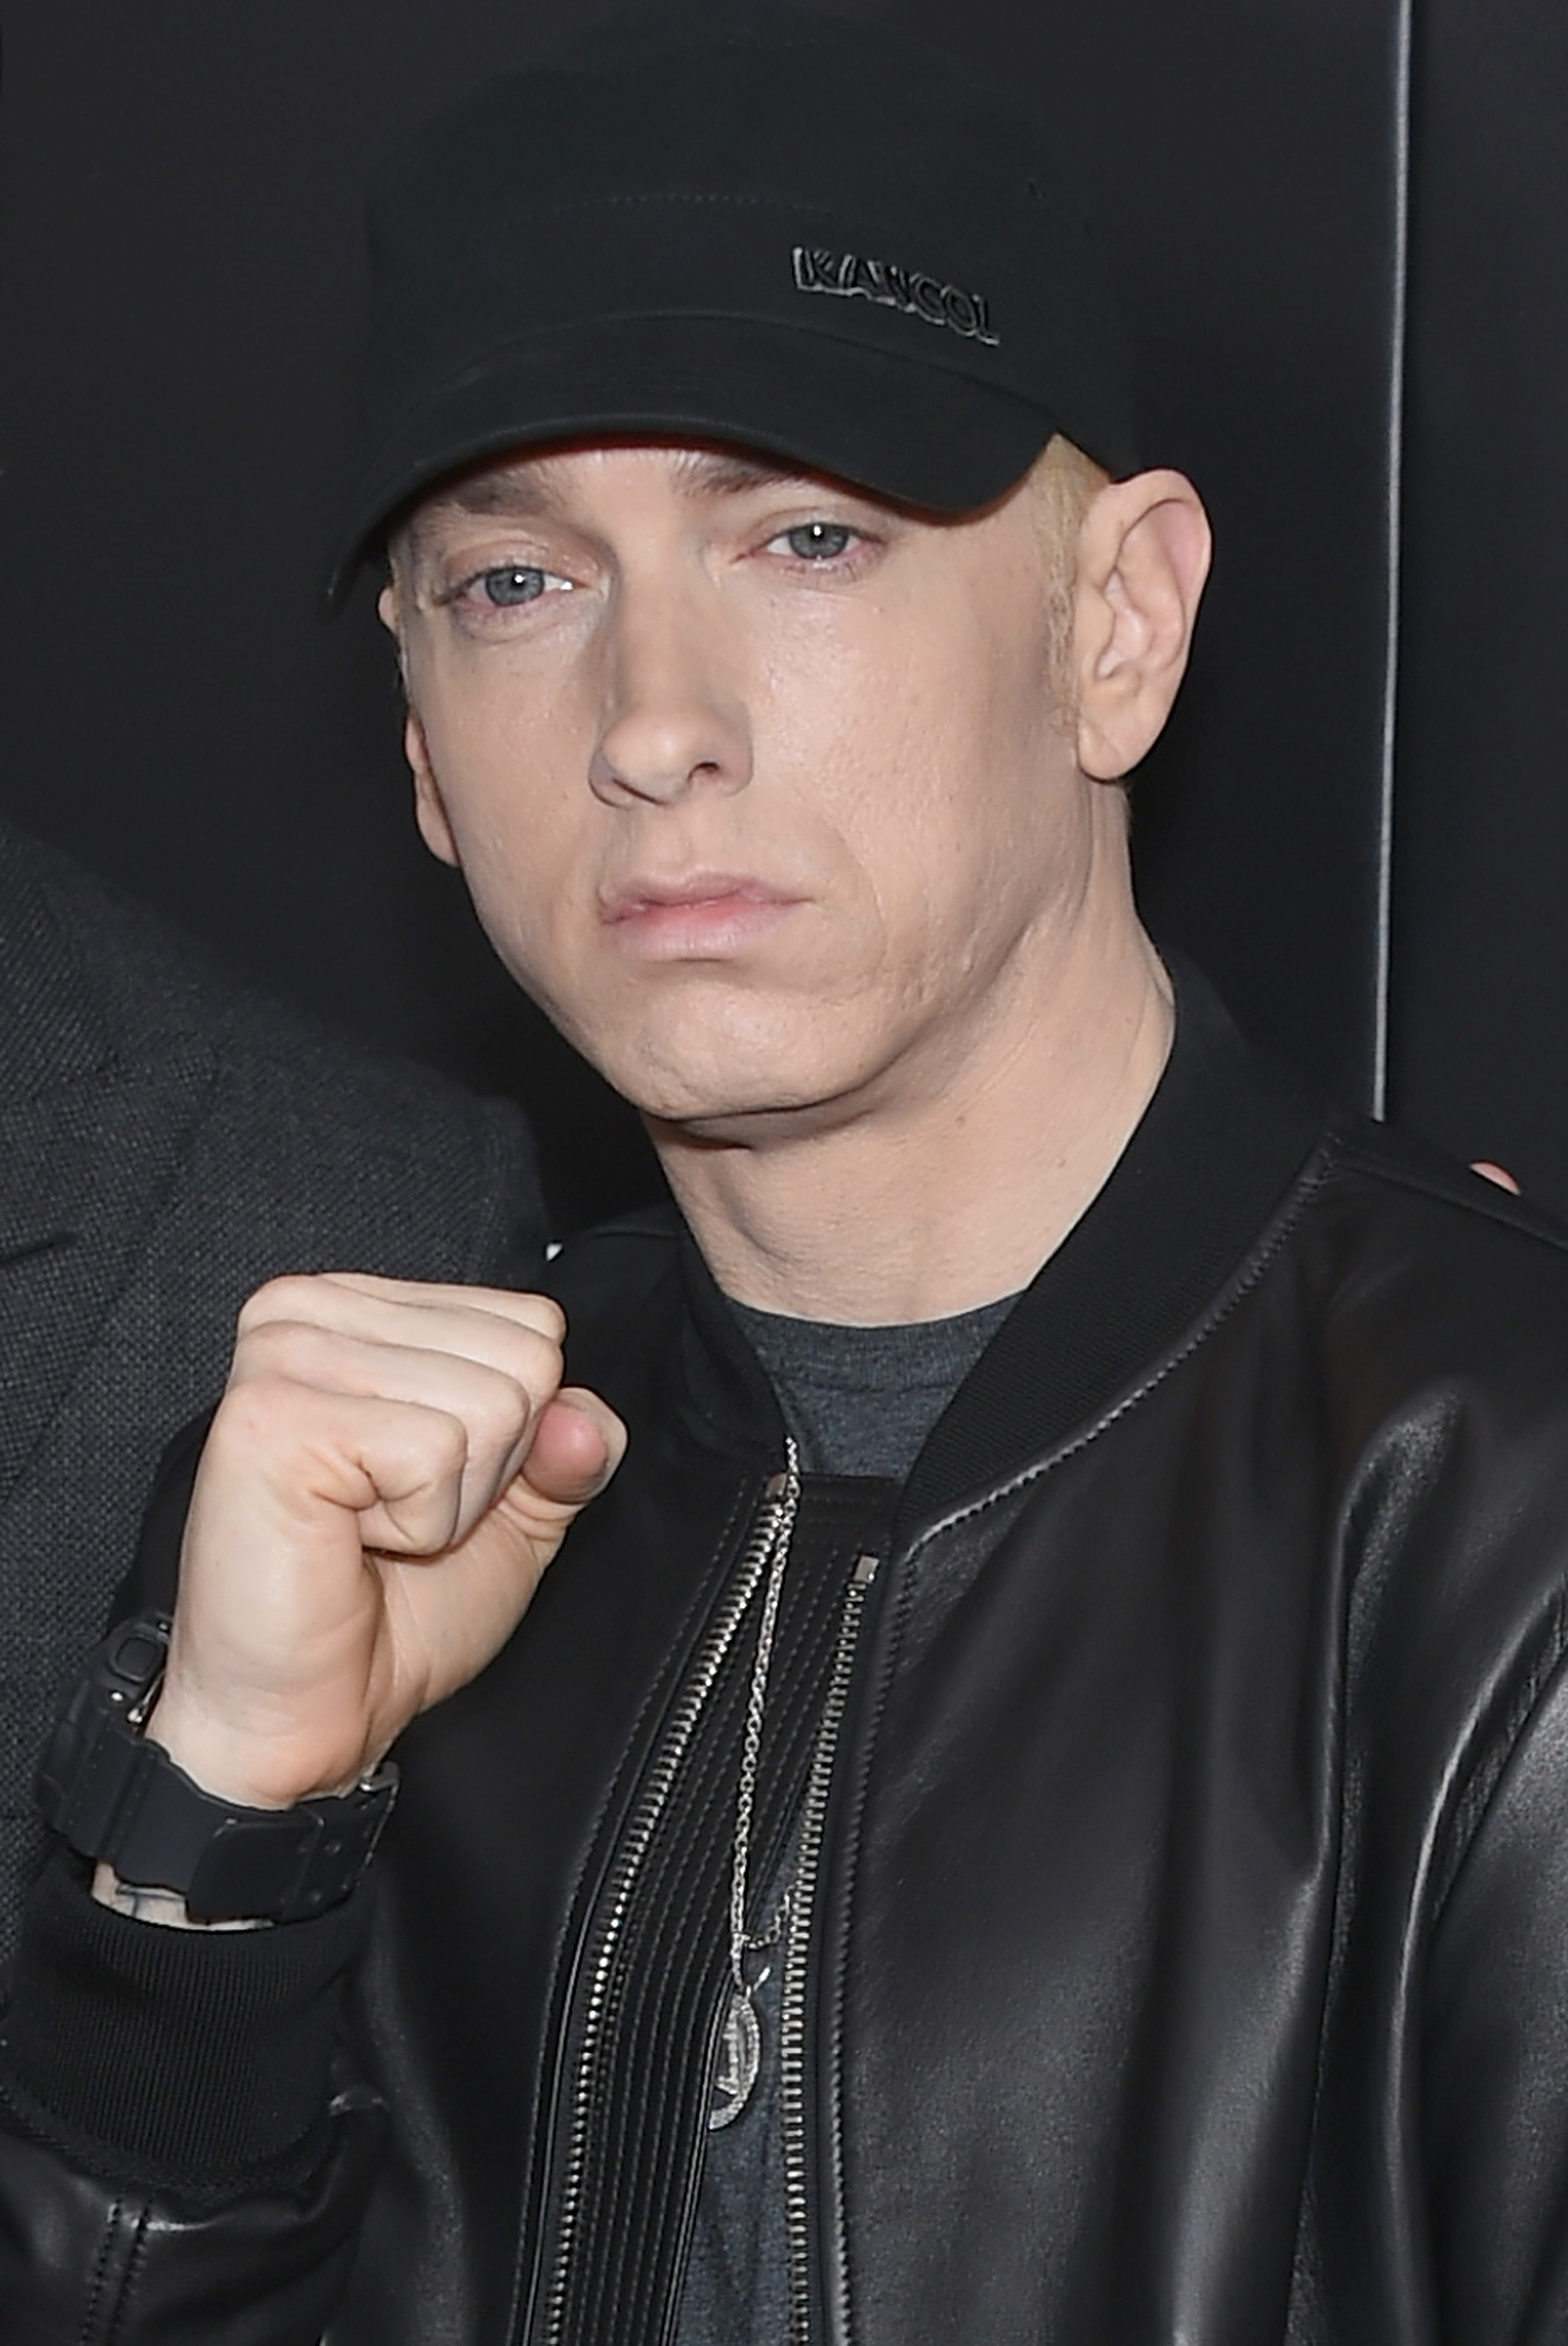 Eminem Goes Sneaker Shopping at Burn Rubber